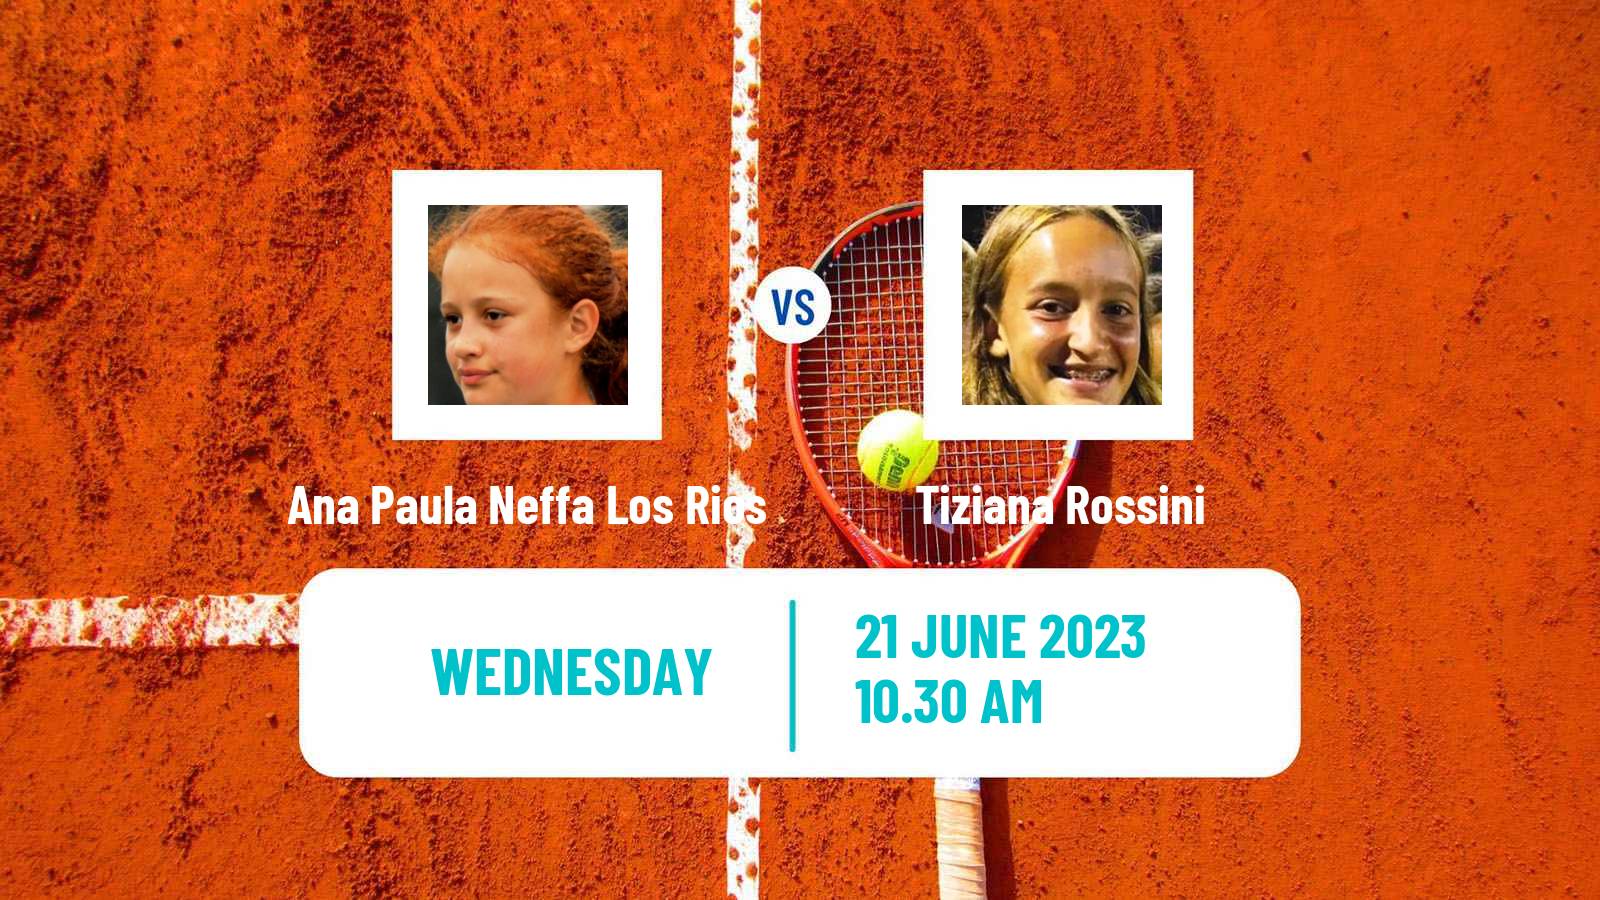 Tennis ITF W15 Buenos Aires Women Ana Paula Neffa Los Rios - Tiziana Rossini